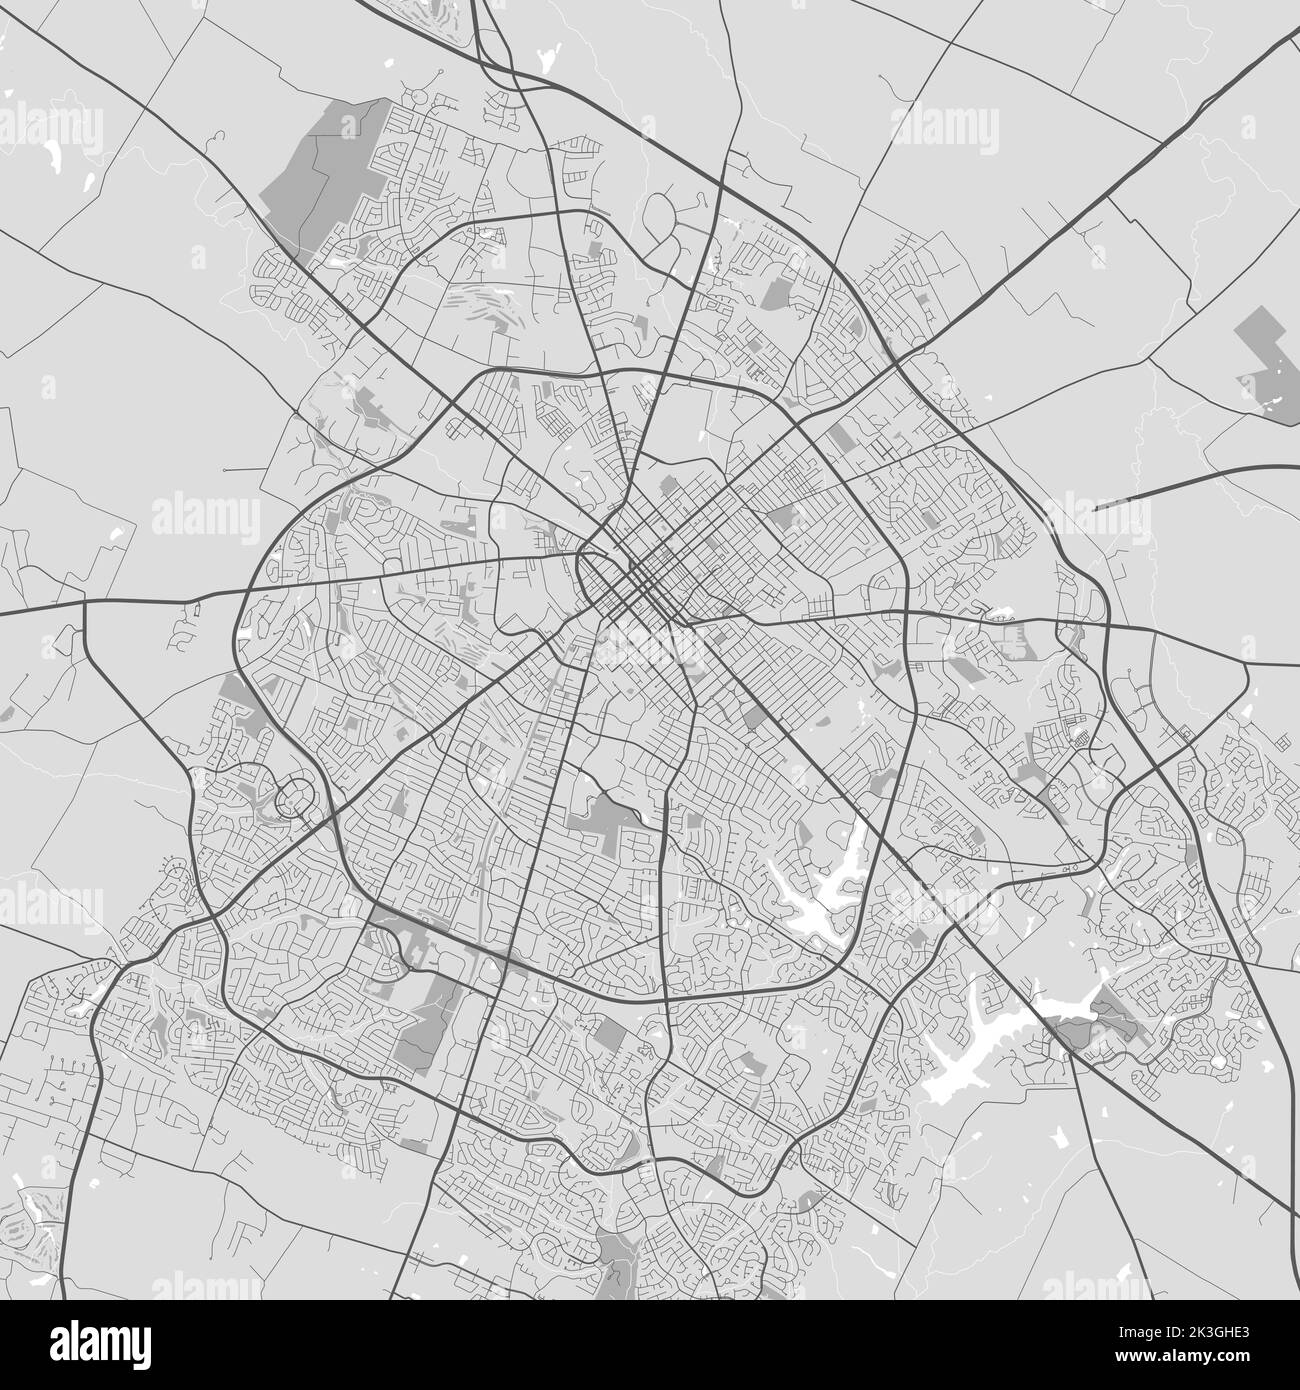 Mappa vettoriale della città di Lexington. Poster in scala di grigi urbana. Immagine della mappa stradale con vista dell'area metropolitana. Illustrazione Vettoriale